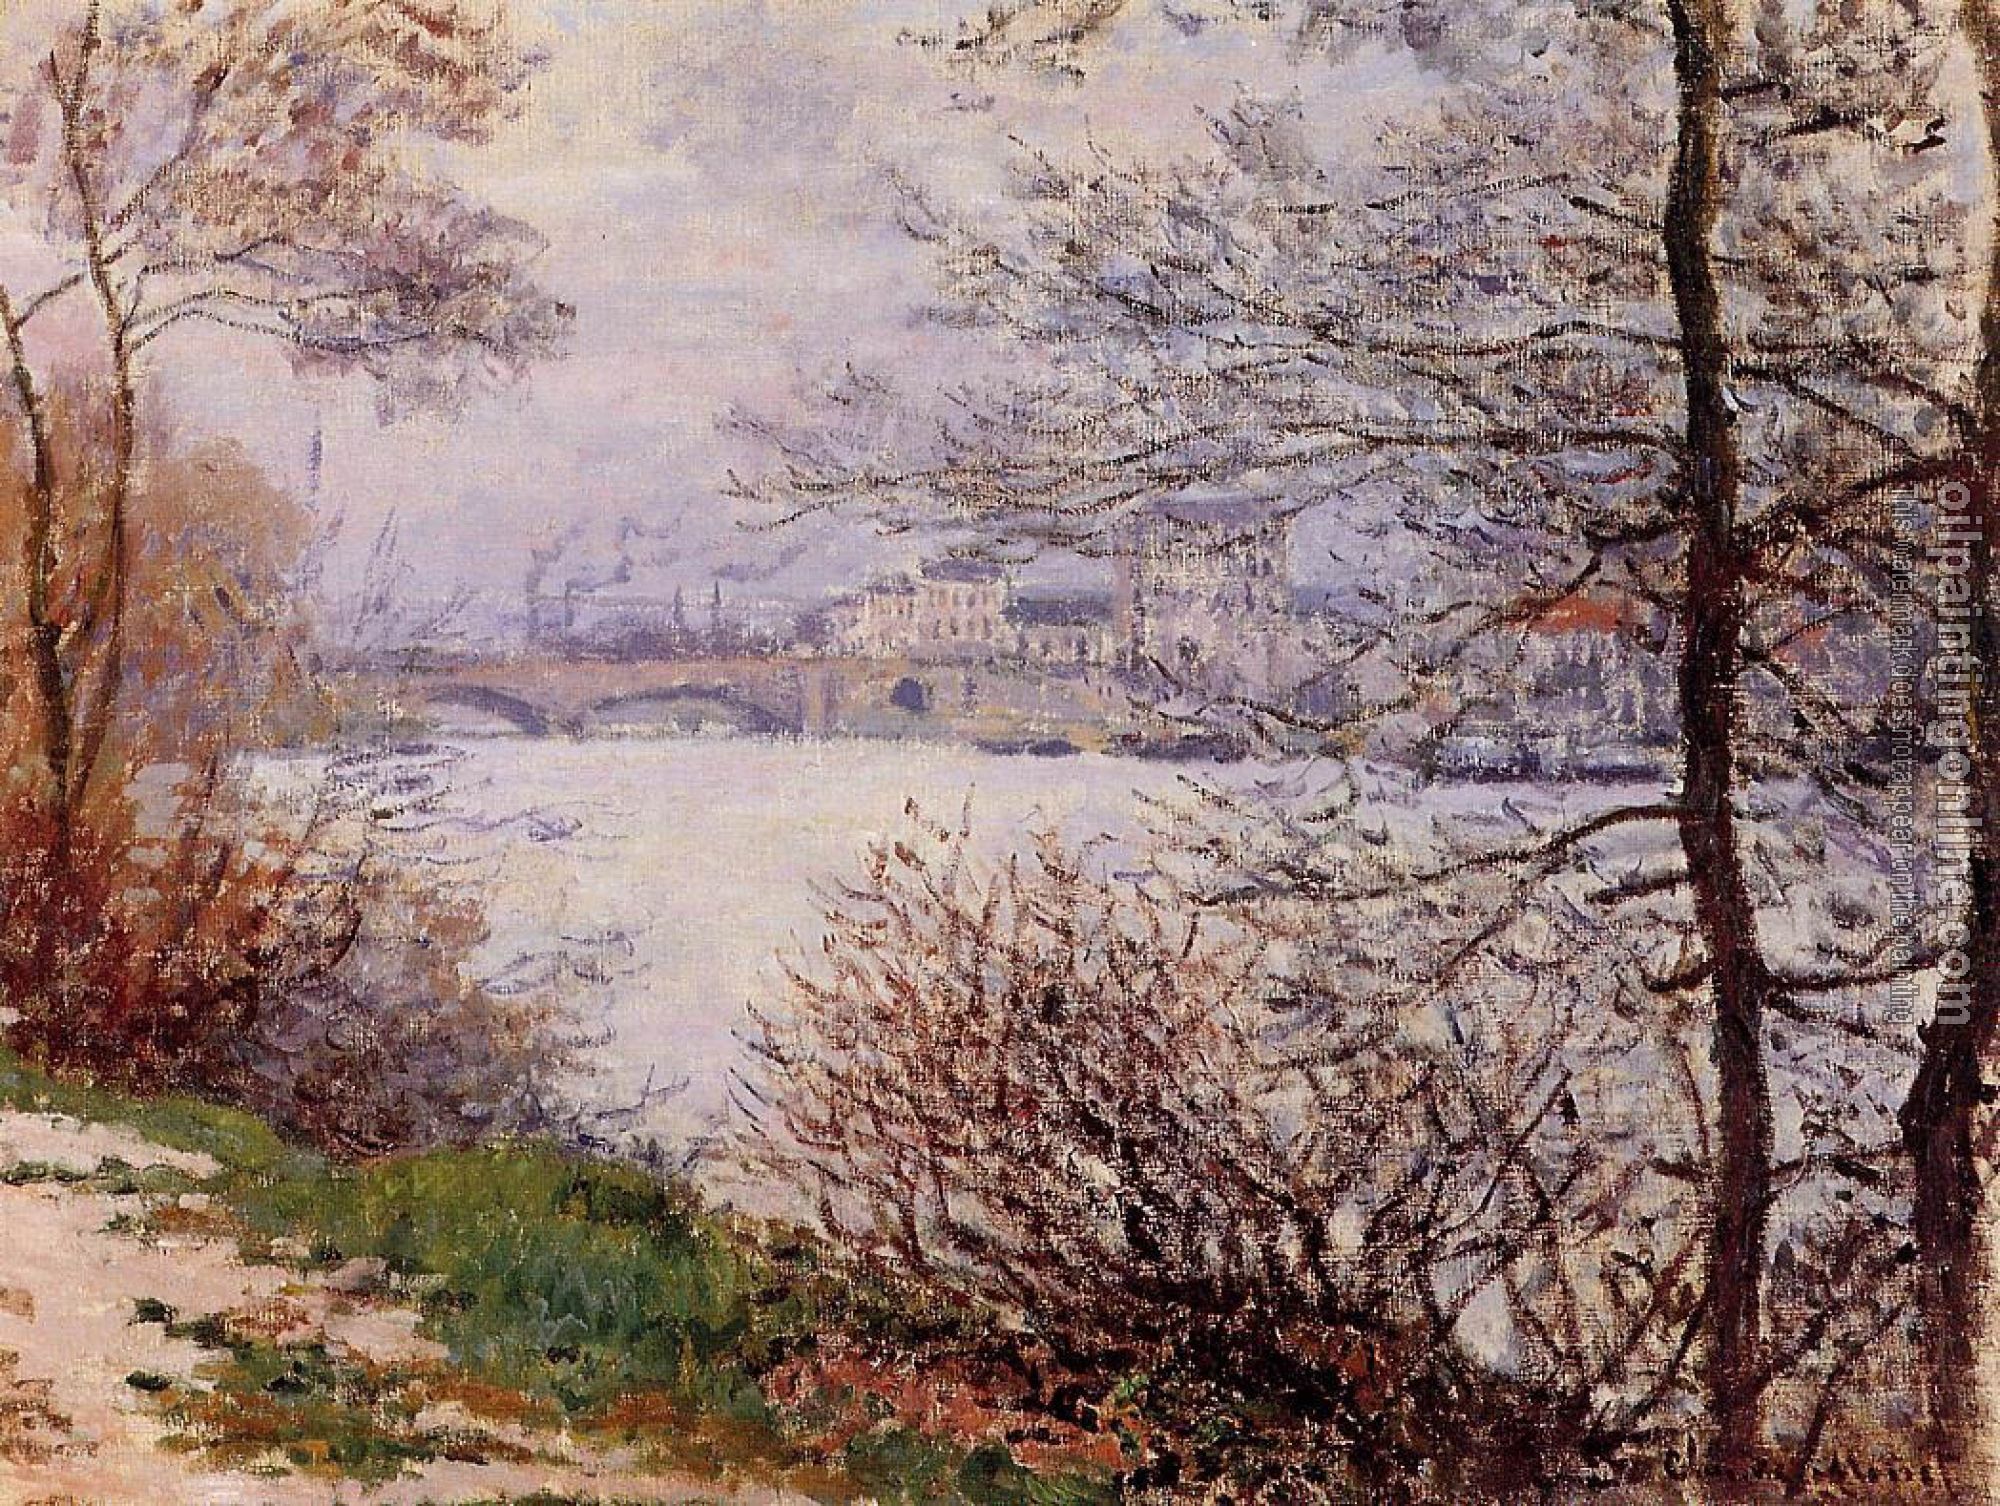 Monet, Claude Oscar - The Banks of the Seine, Ile de la Grande-Jatte